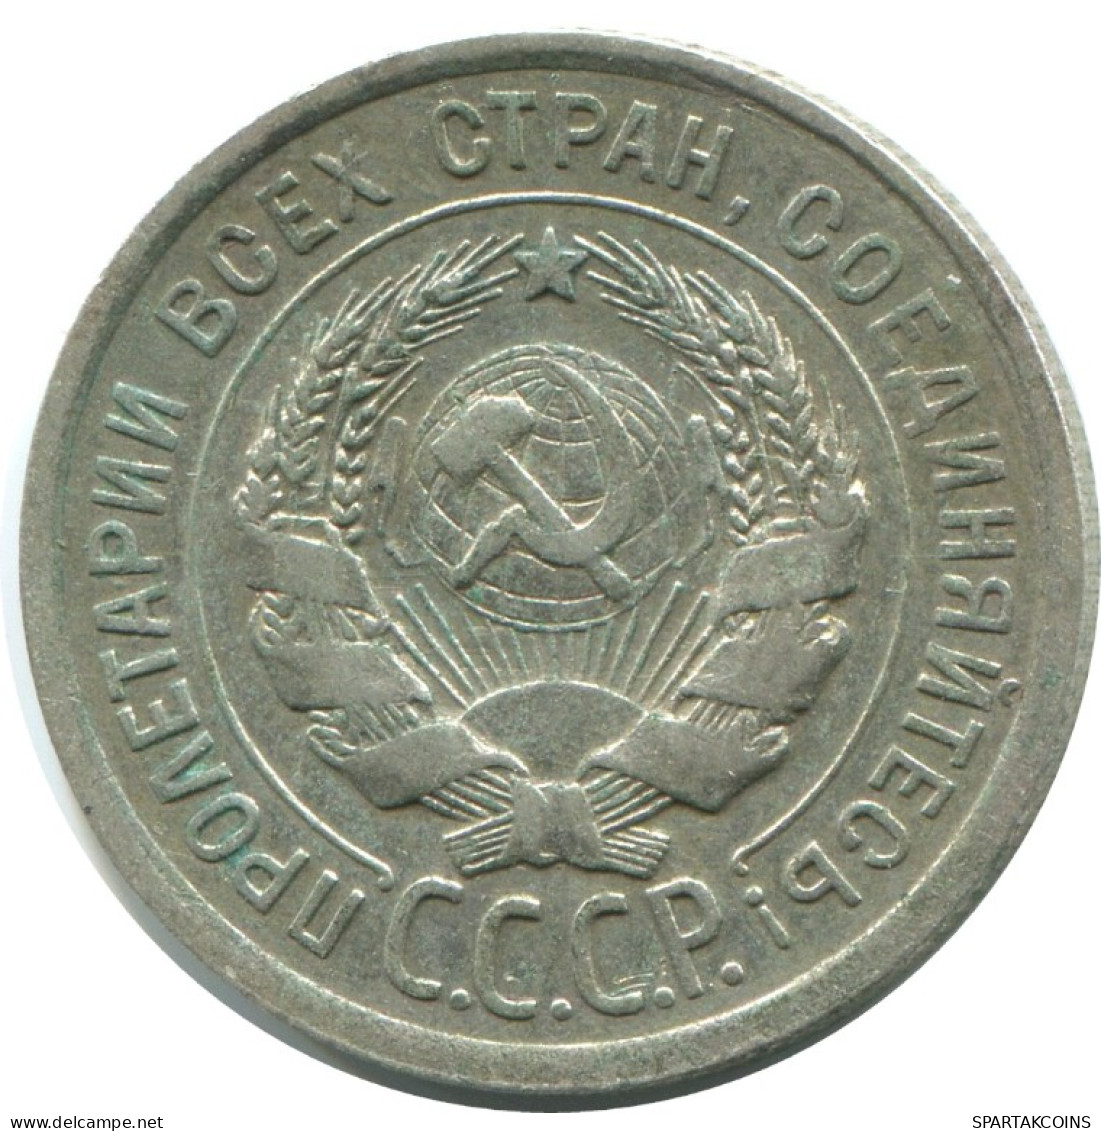 20 KOPEKS 1924 RUSSLAND RUSSIA USSR SILBER Münze HIGH GRADE #AF290.4.D.A - Russland